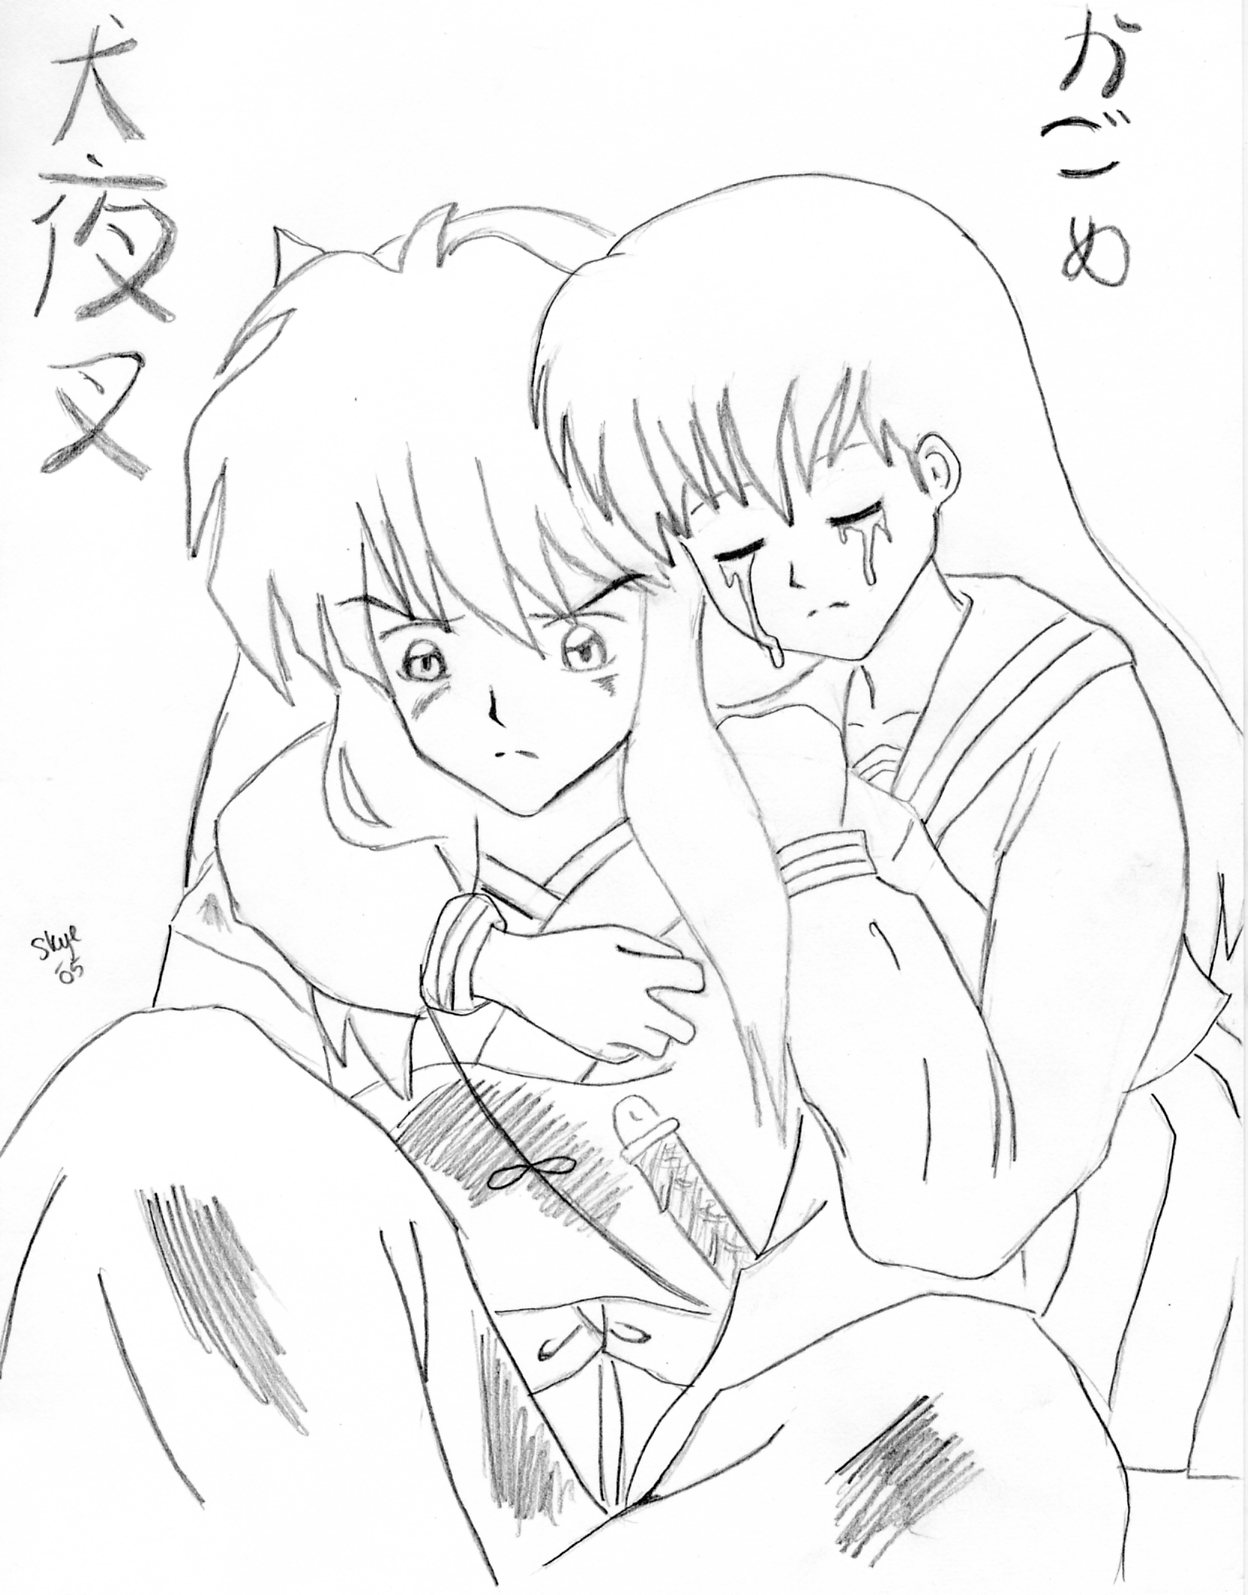 Manga Inuyasha and Kagome by kagome4ever15